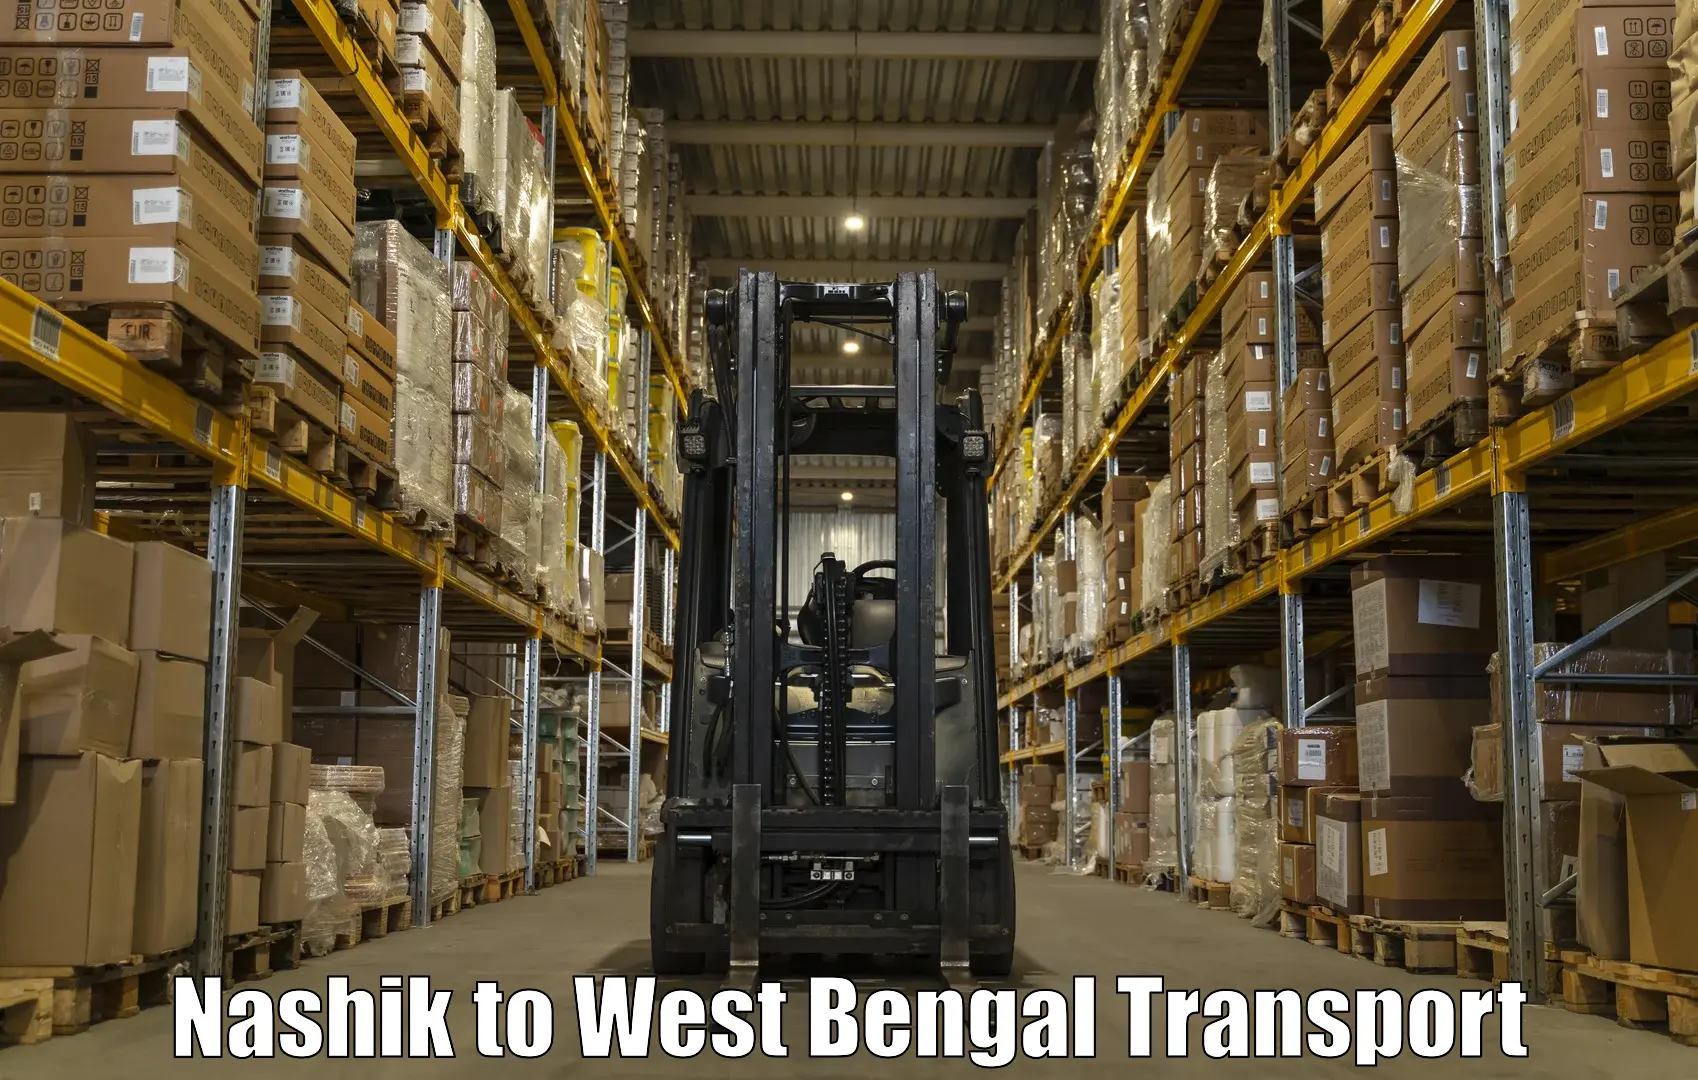 Furniture transport service Nashik to North 24 Parganas